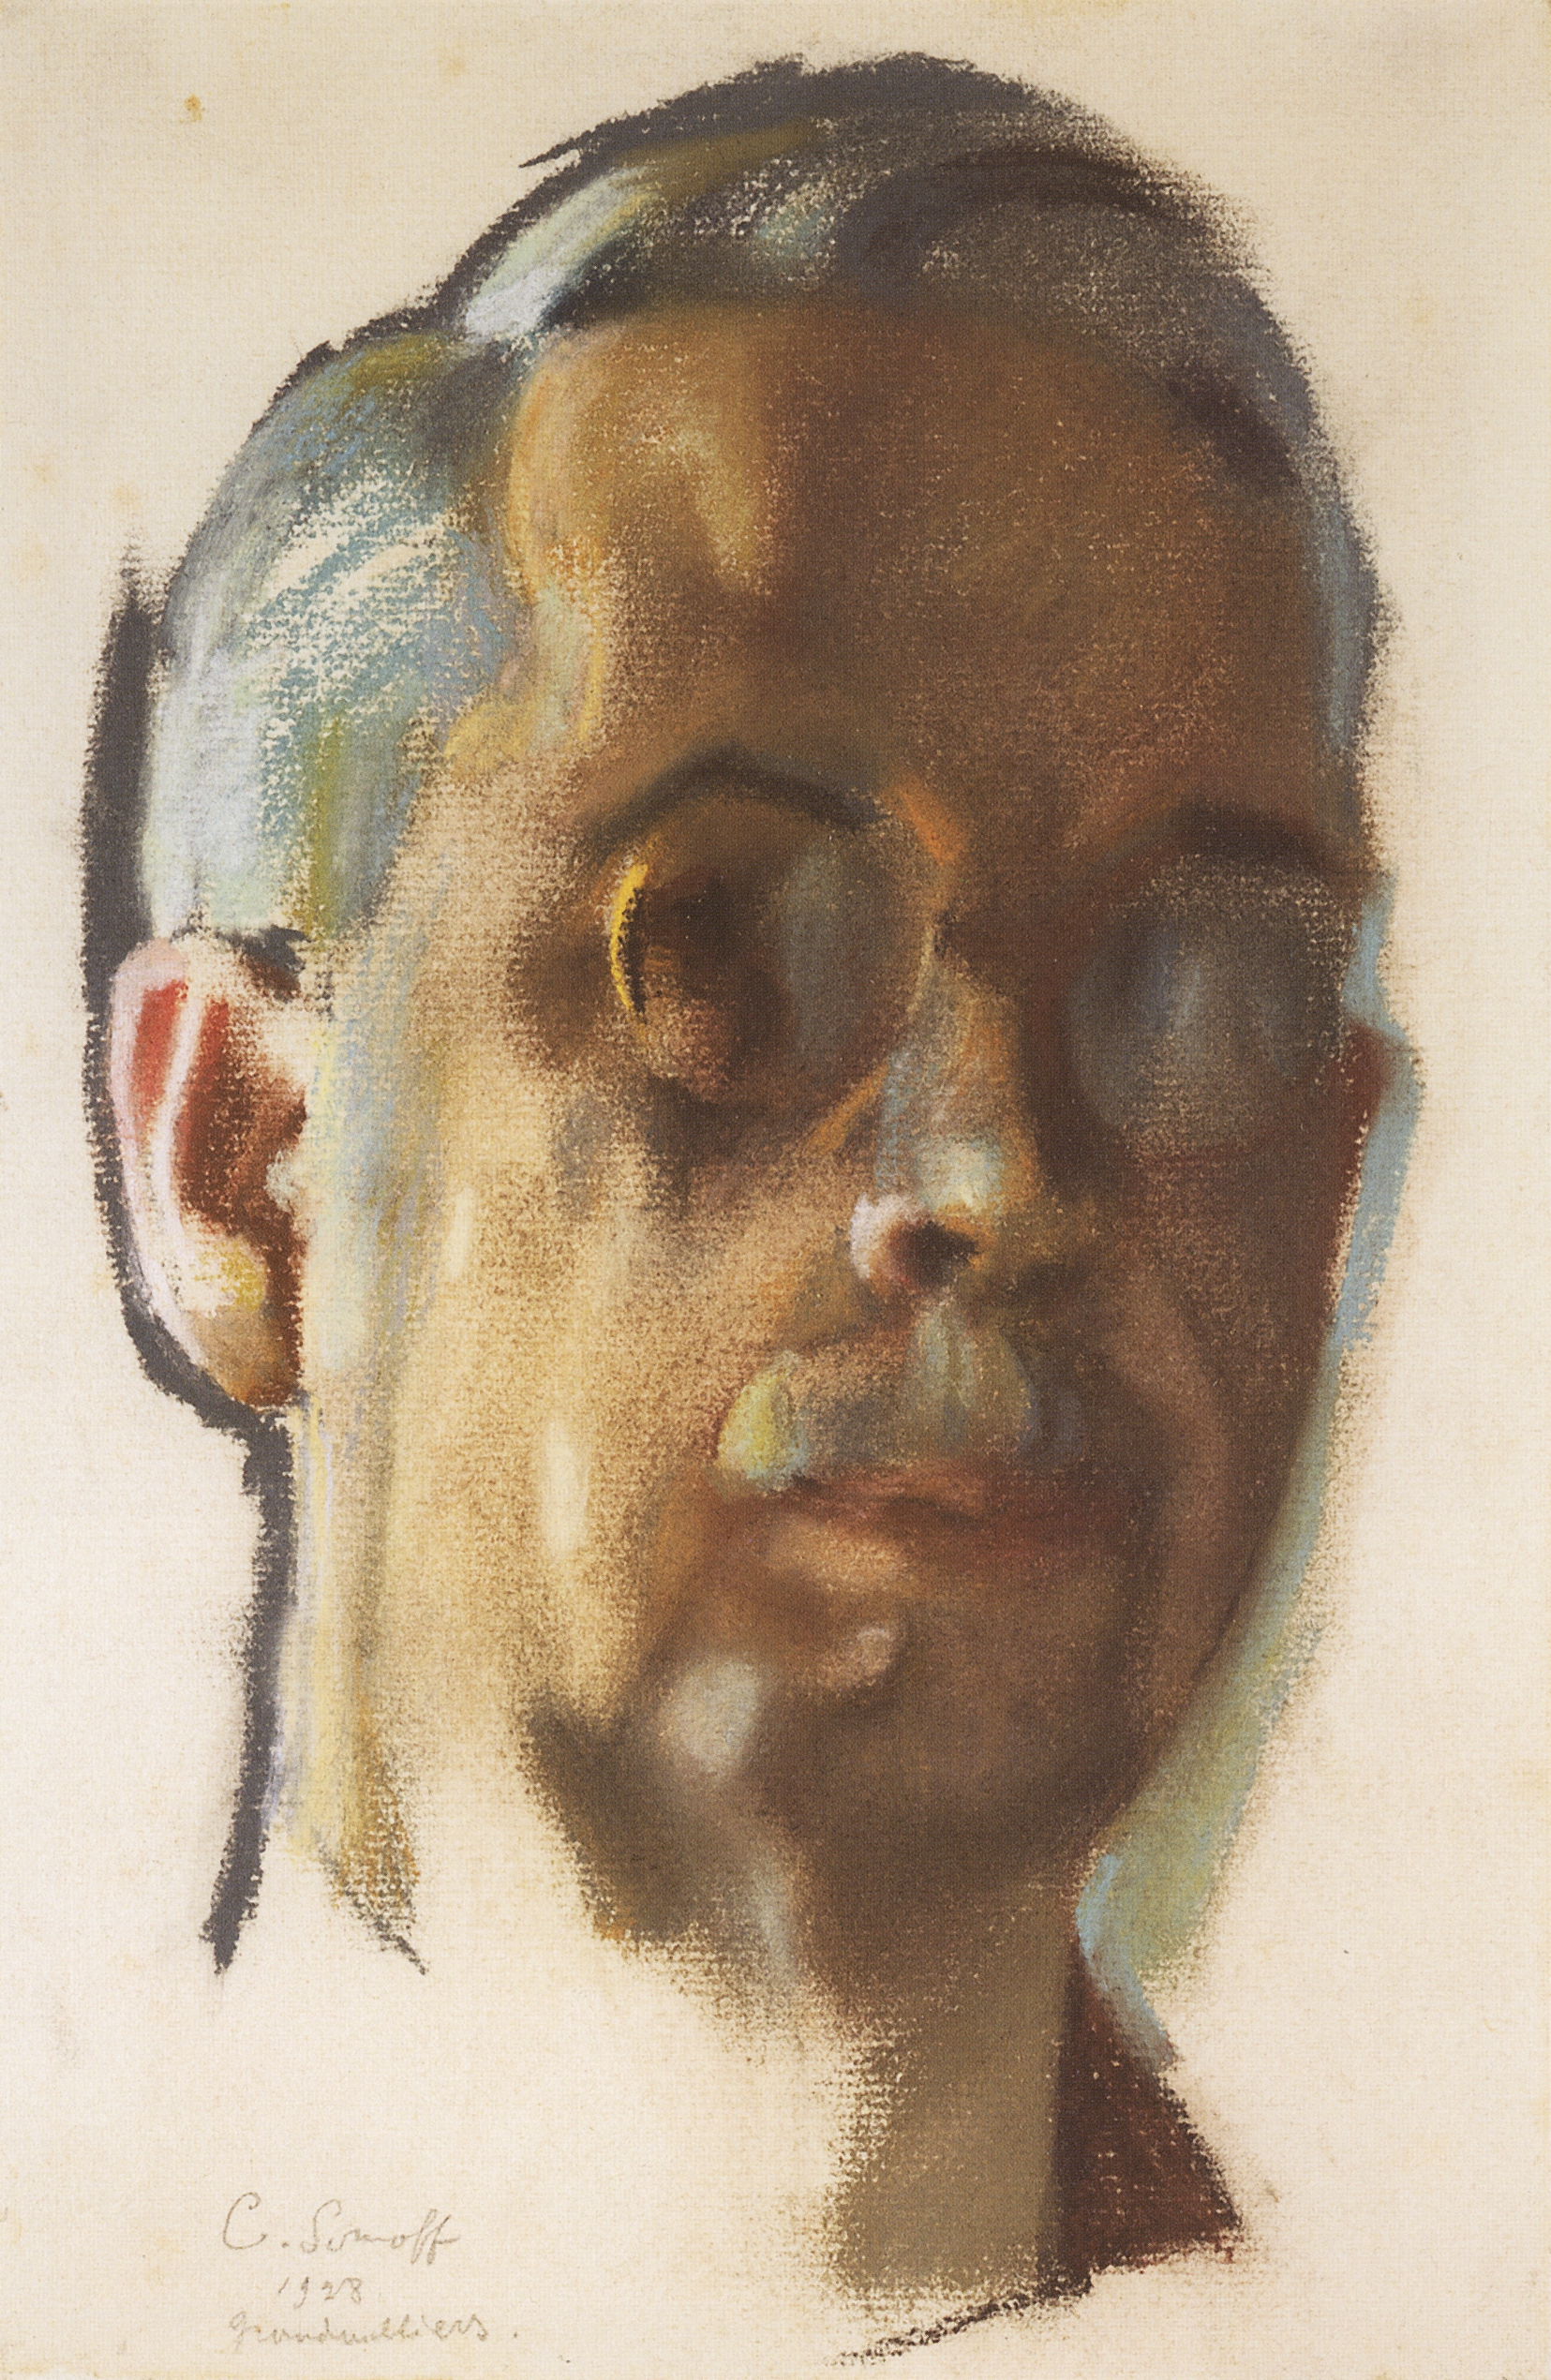 Сомов. Автопортрет. 1928